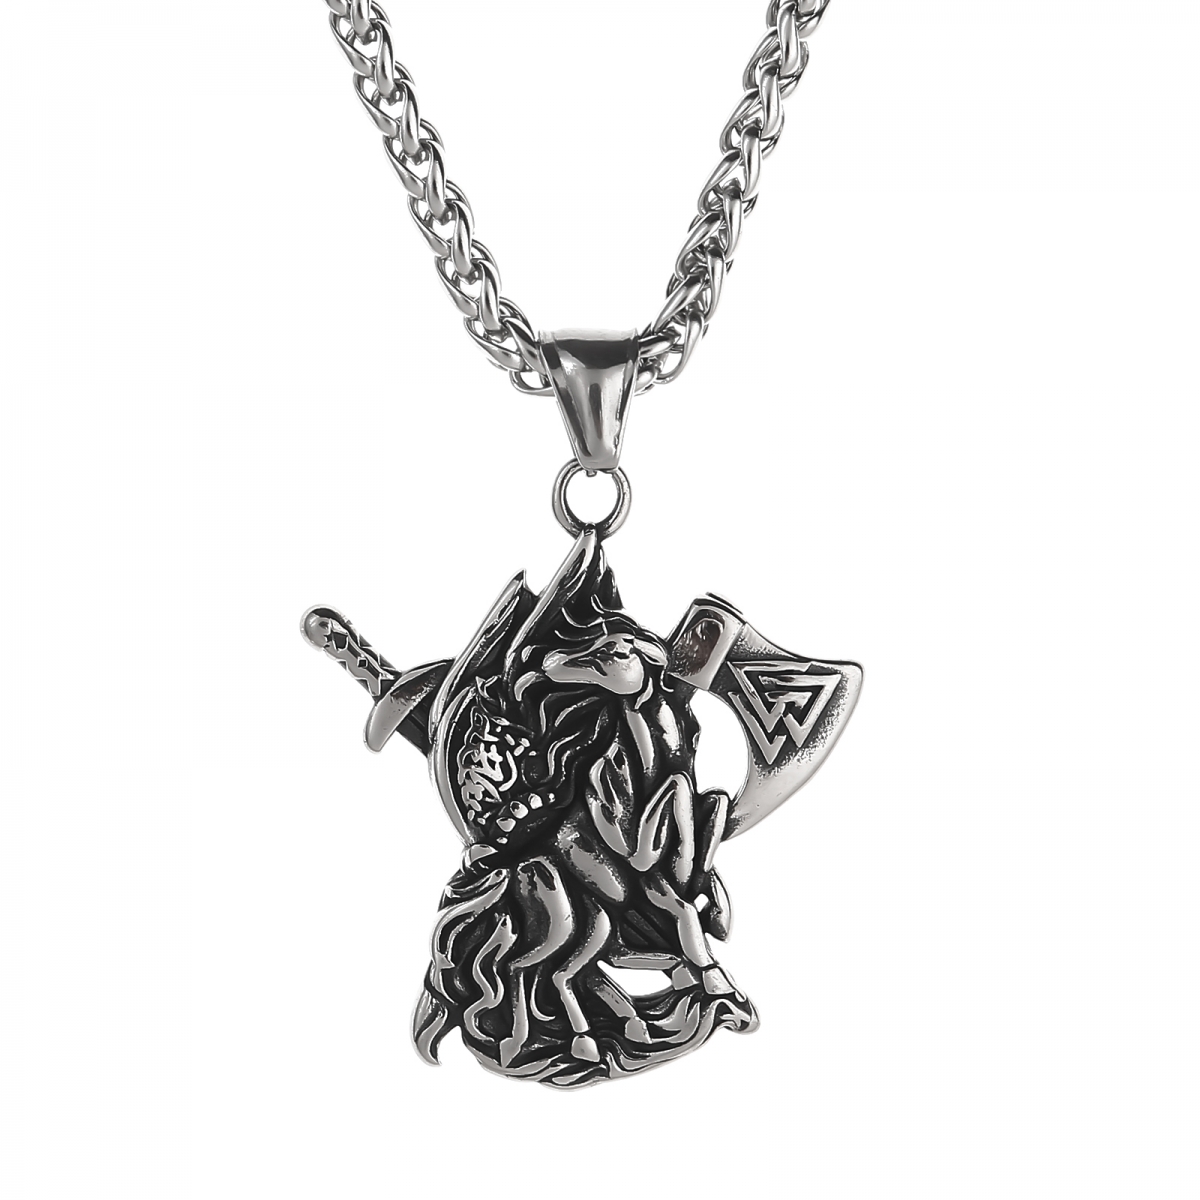 Sleipnir Necklace US$2.9/PC-NORSECOLLECTION- Viking Jewelry,Viking Necklace,Viking Bracelet,Viking Rings,Viking Mugs,Viking Accessories,Viking Crafts